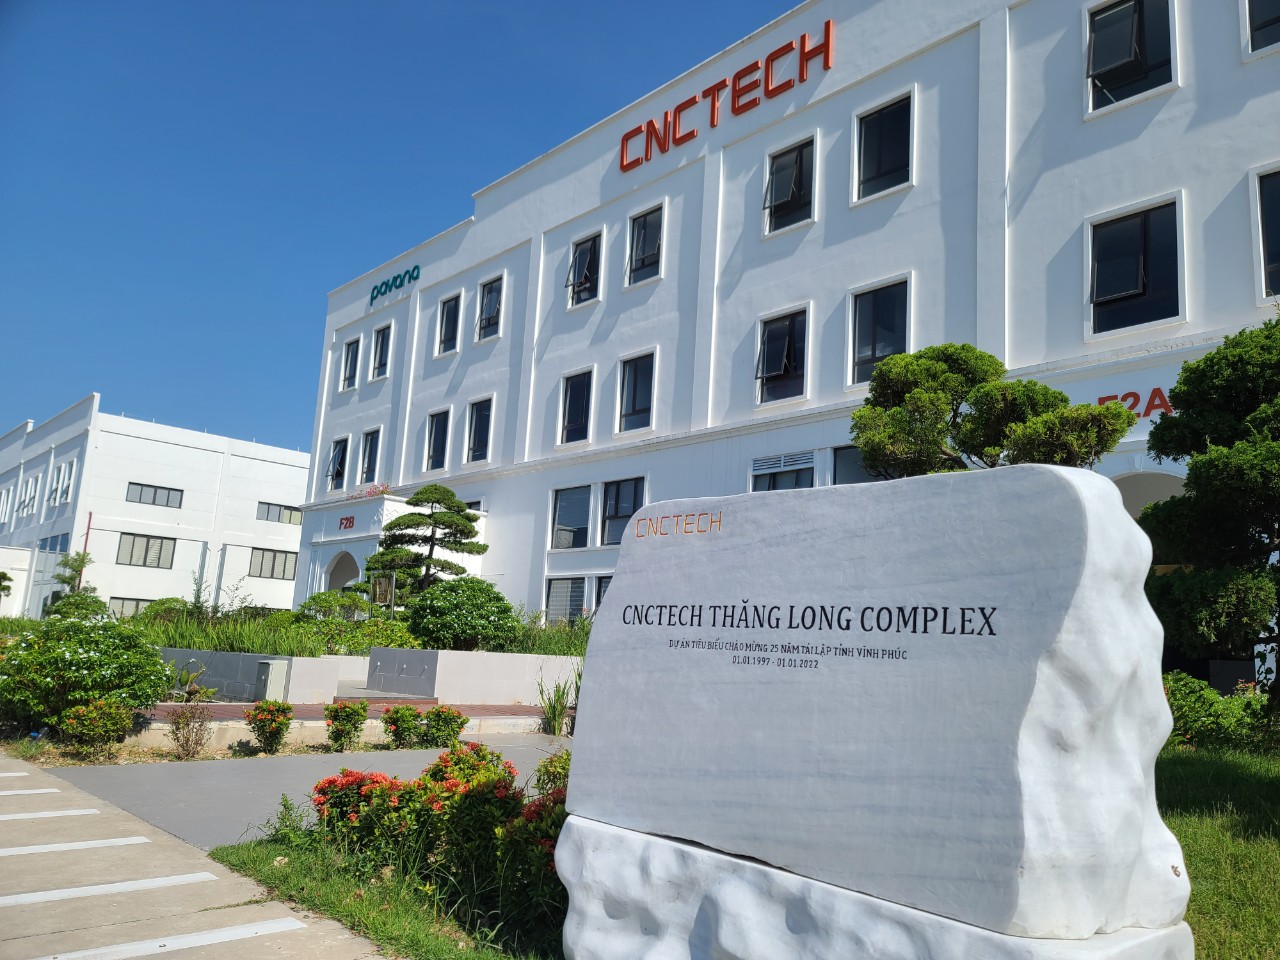 Nhà máy CNC Tech Thăng Long tại KCN của Tập đoàn Sumitomo Nhật Bản thuộc dự án KCN Thăng Long Vĩnh Phúc với tổng mức đầu tư 466 tỷ đồng và đang tiếp tục mở rộng quy mô thêm với tổng vốn đầu tư 298 tỷ đồng.